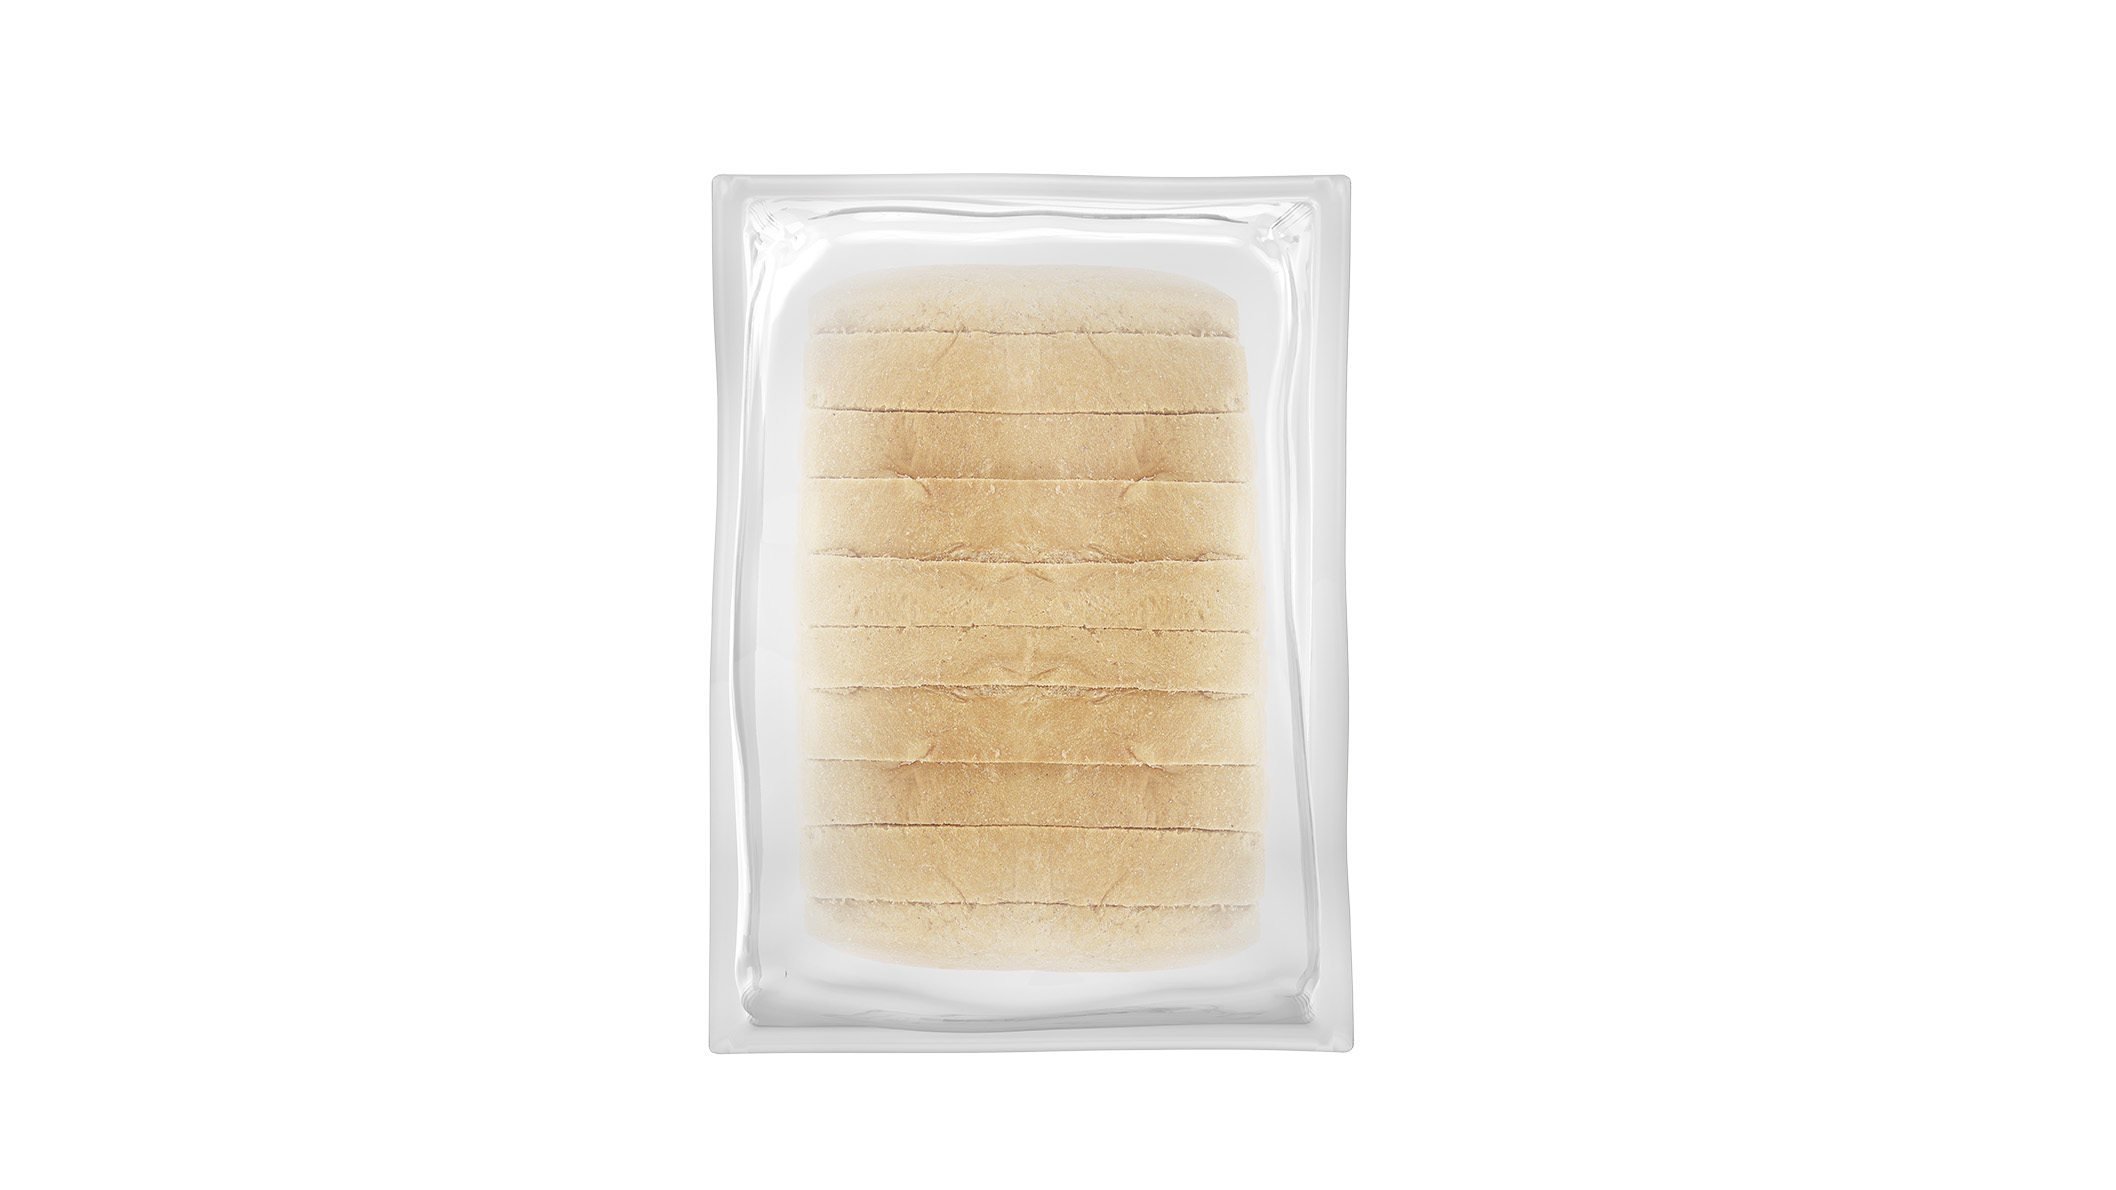 Brezglutenski beli kruh – Pan Blanco